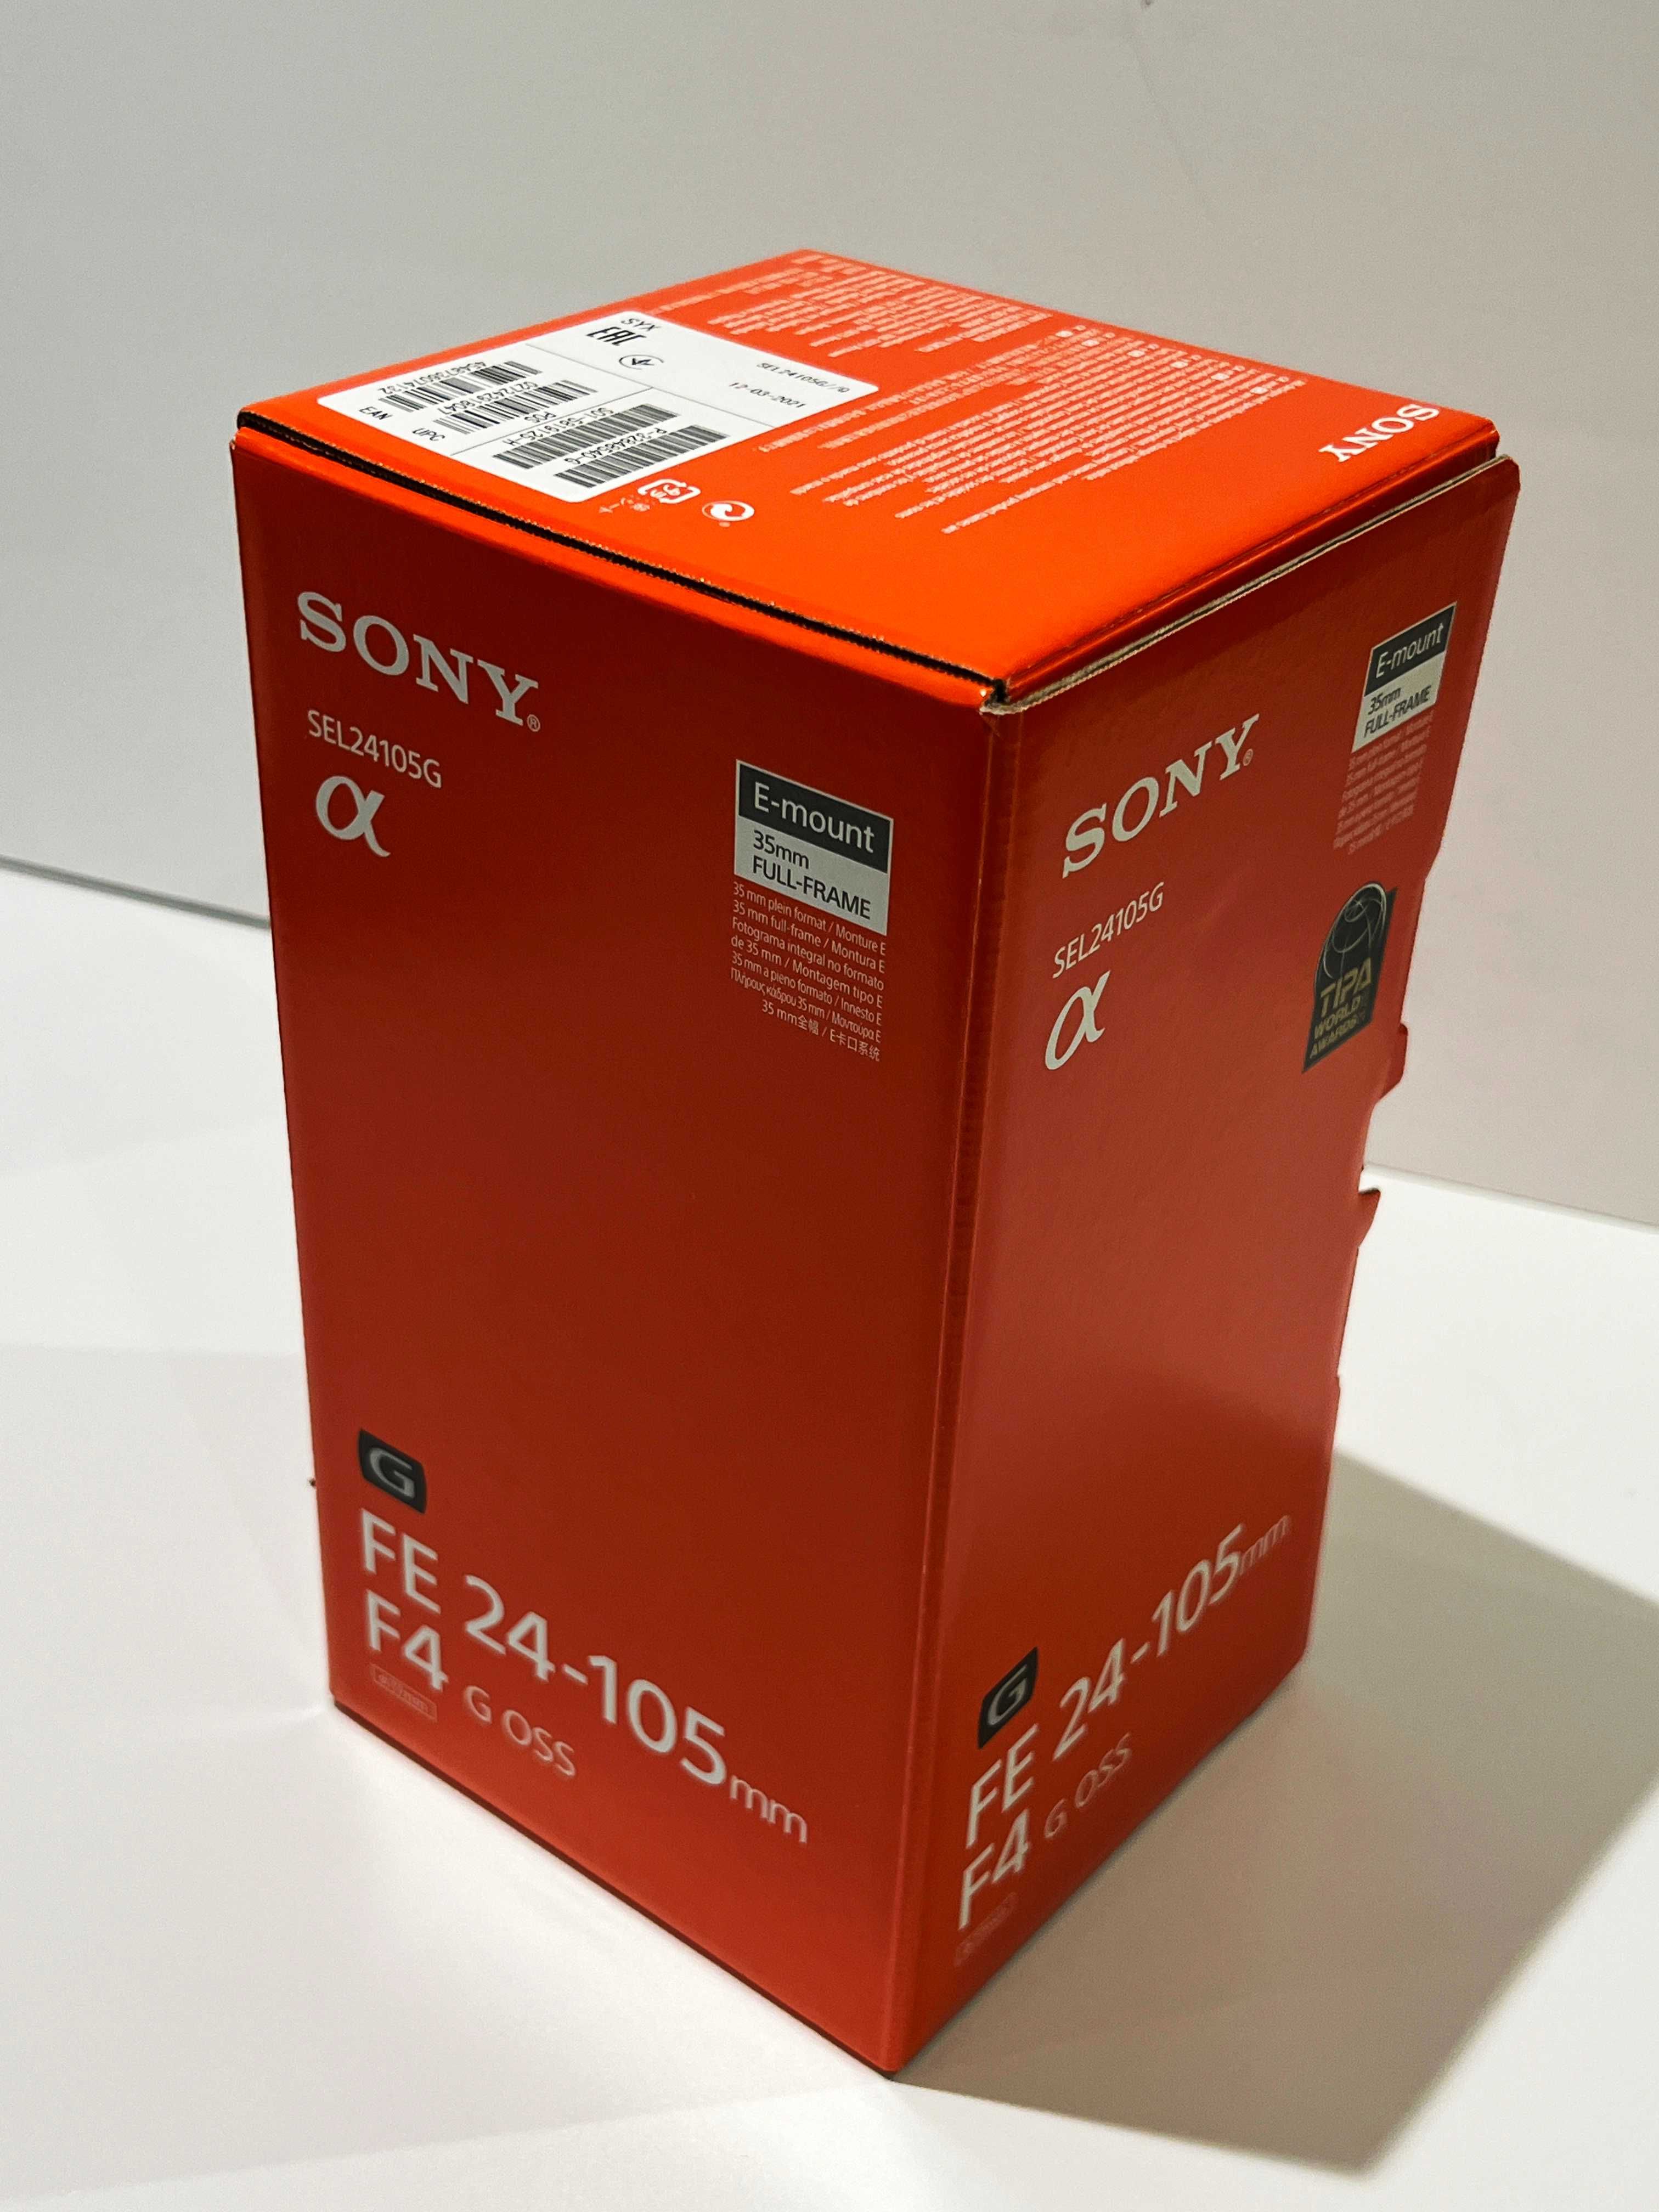 Objectiva SONY FE 24–105mm F4G OSS Full Zoom Optic SteadyShot